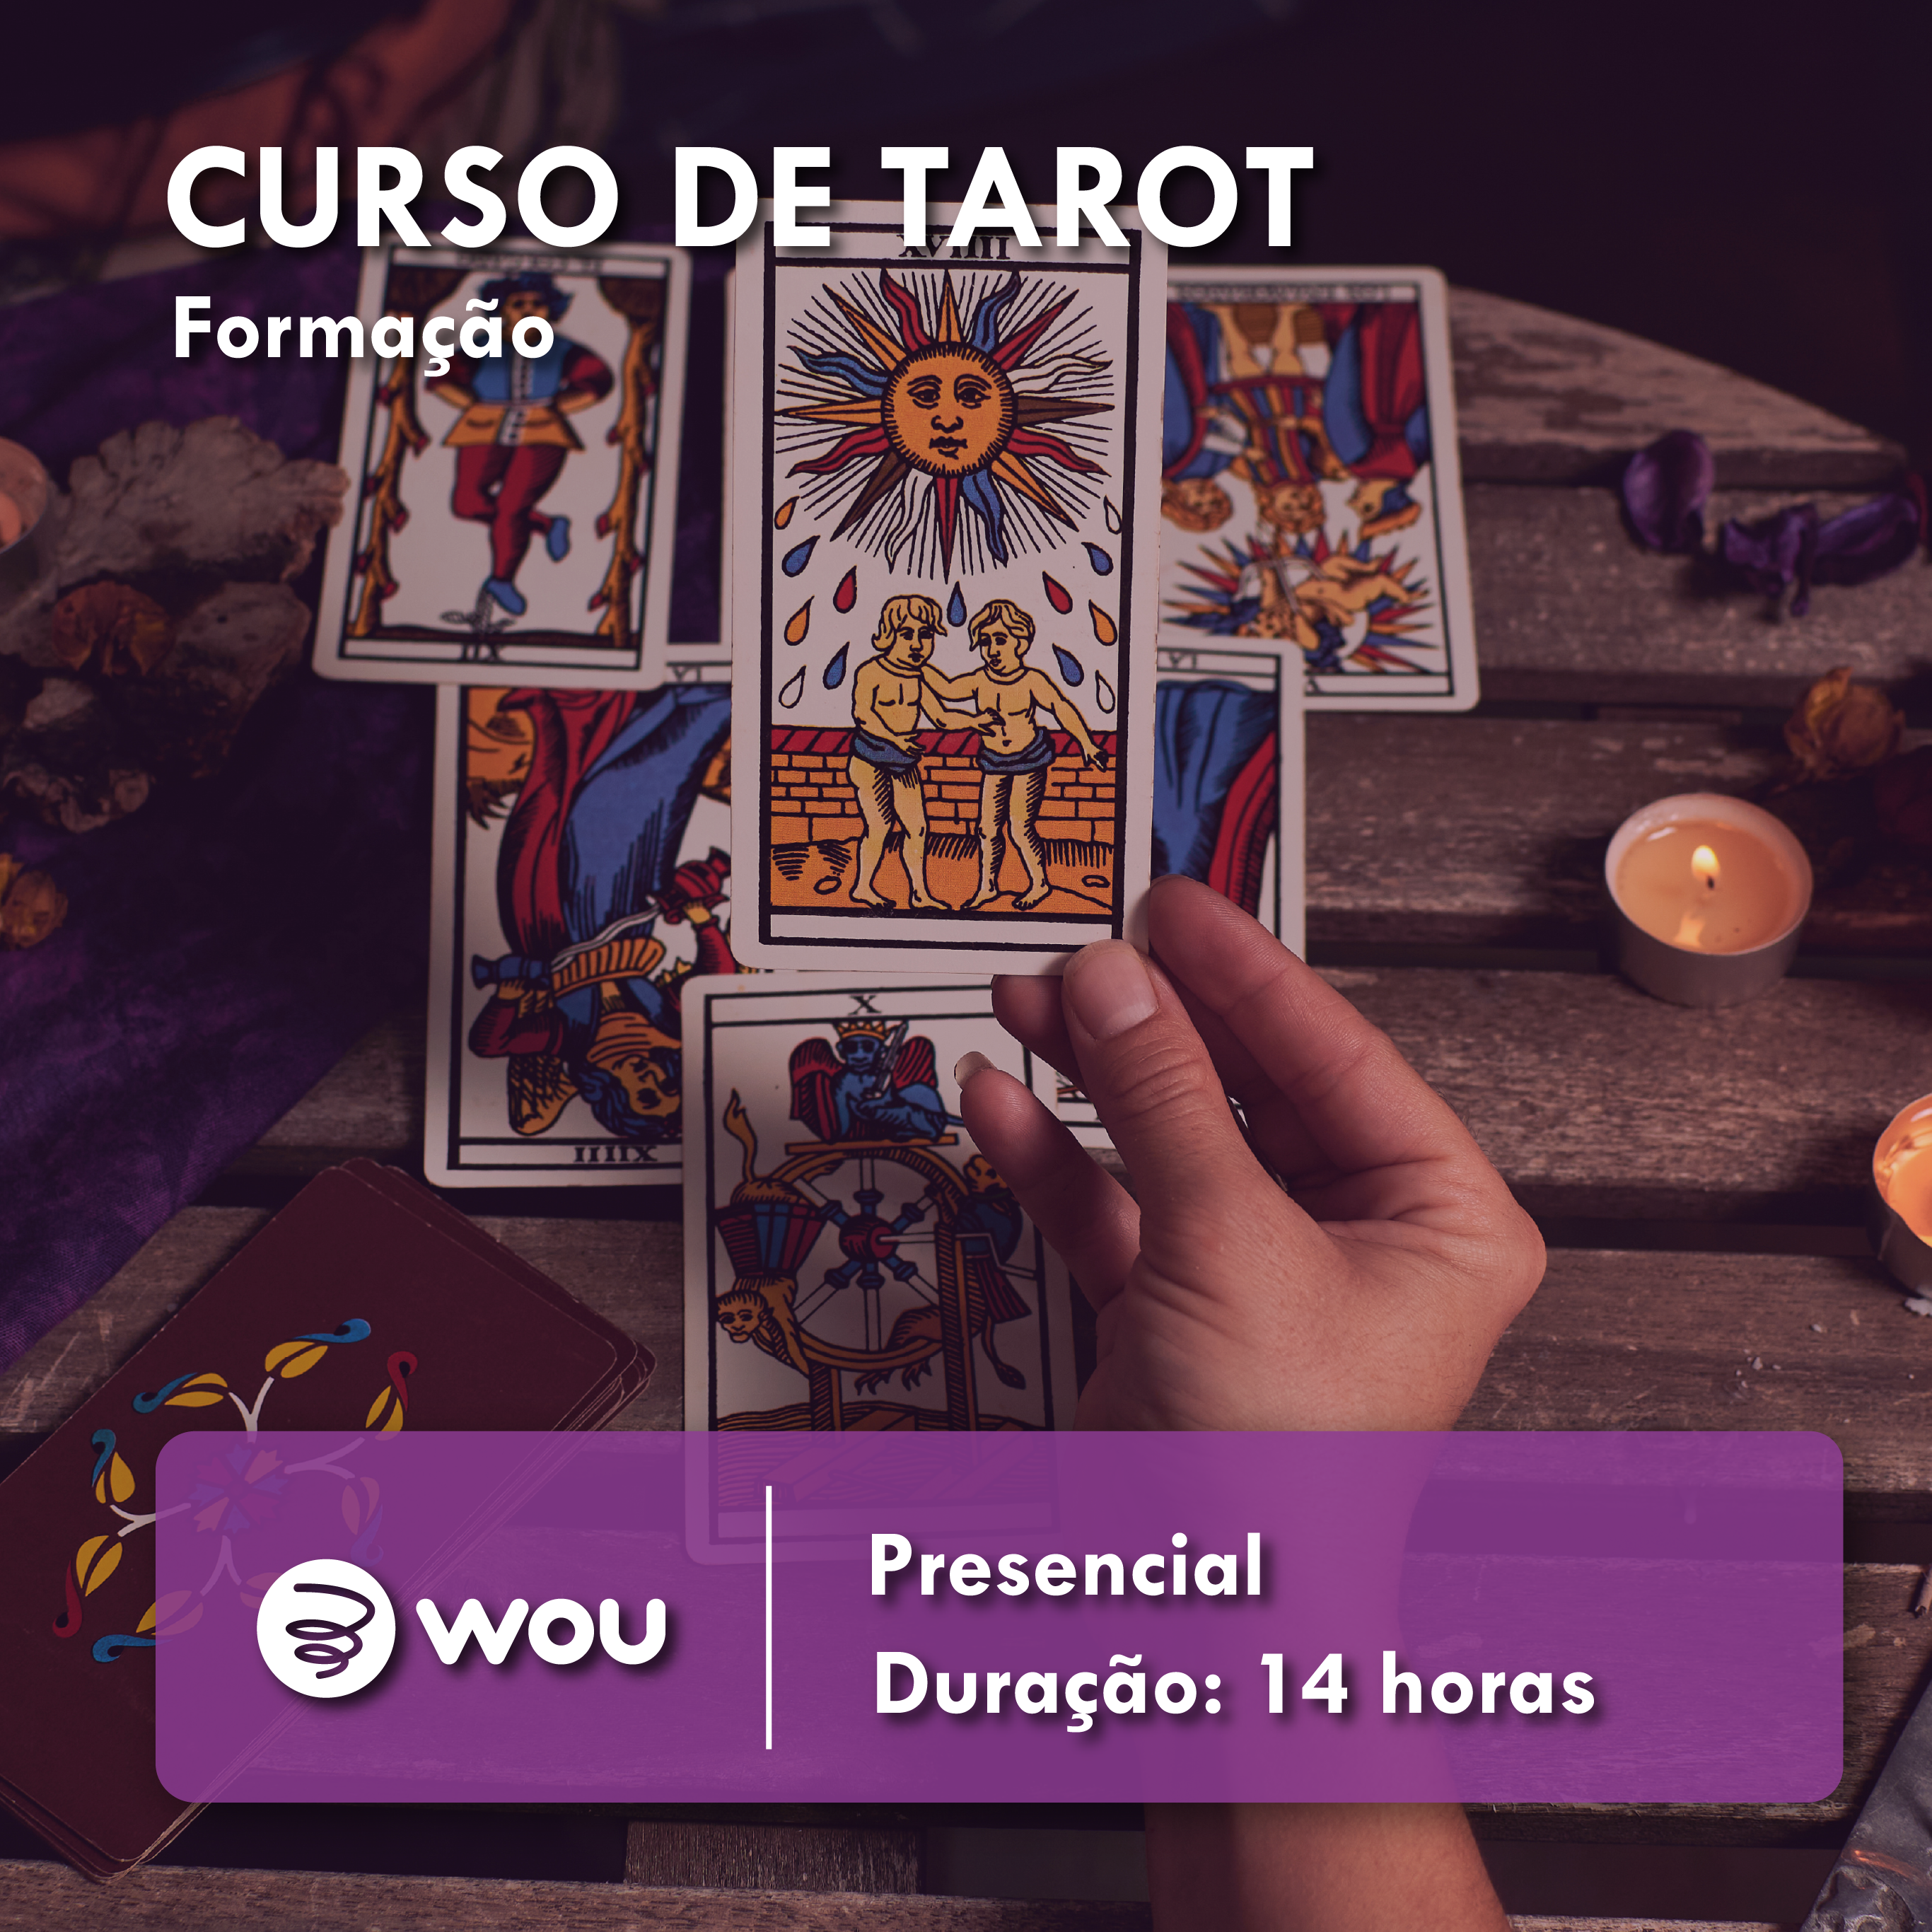 Tarot Course in Porto